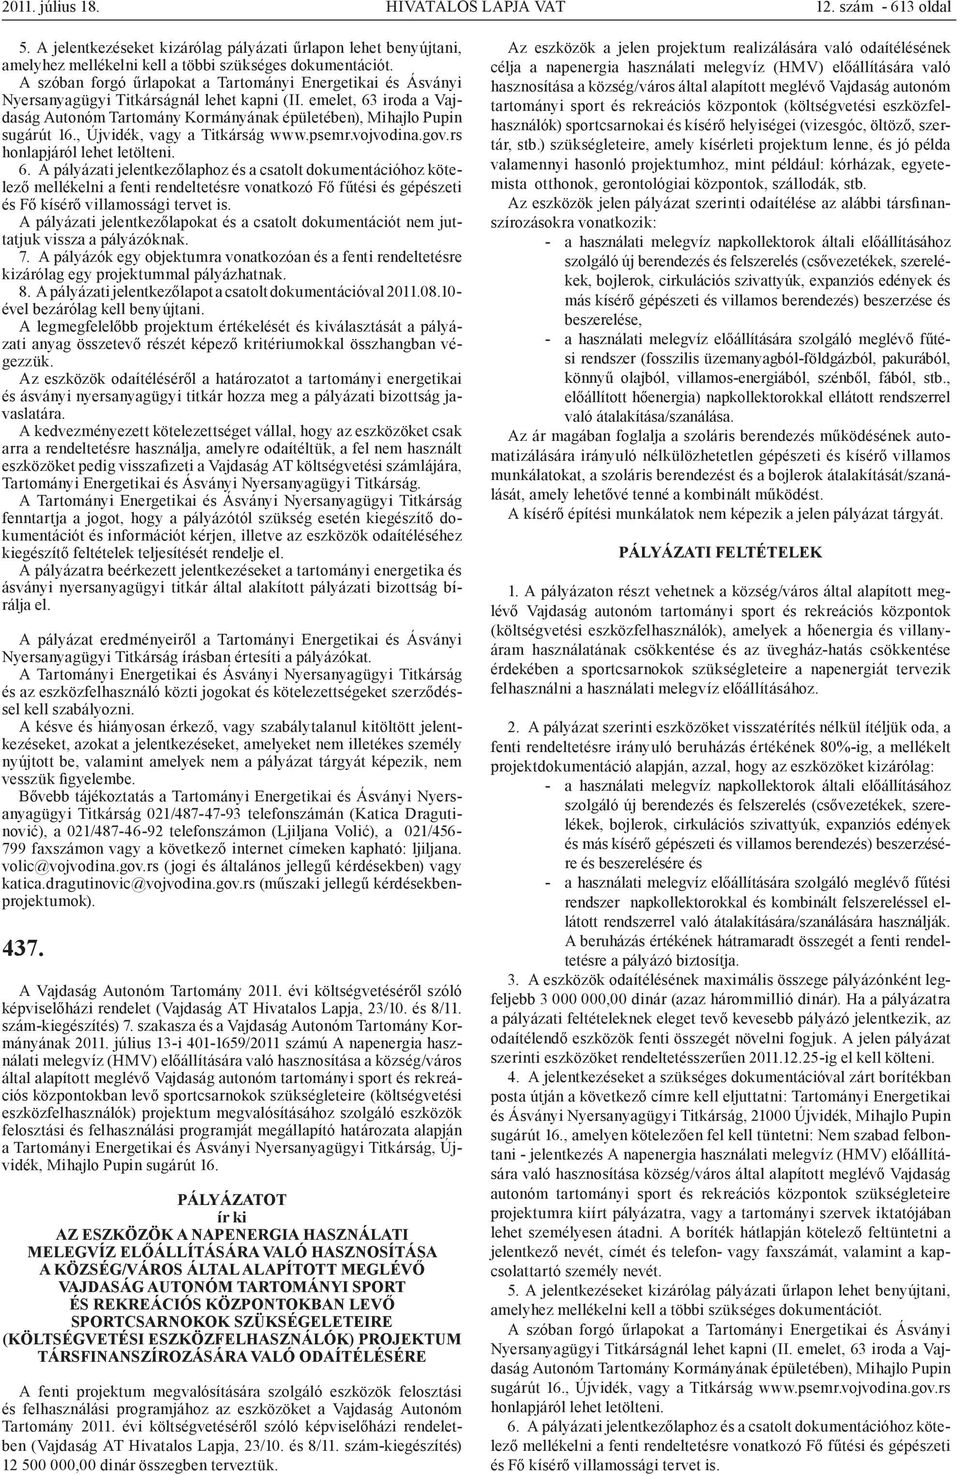 , Újvidék, vagy a Titkárság www.psemr.vojvodina.gov.rs honlapjáról lehet letölteni. 6.